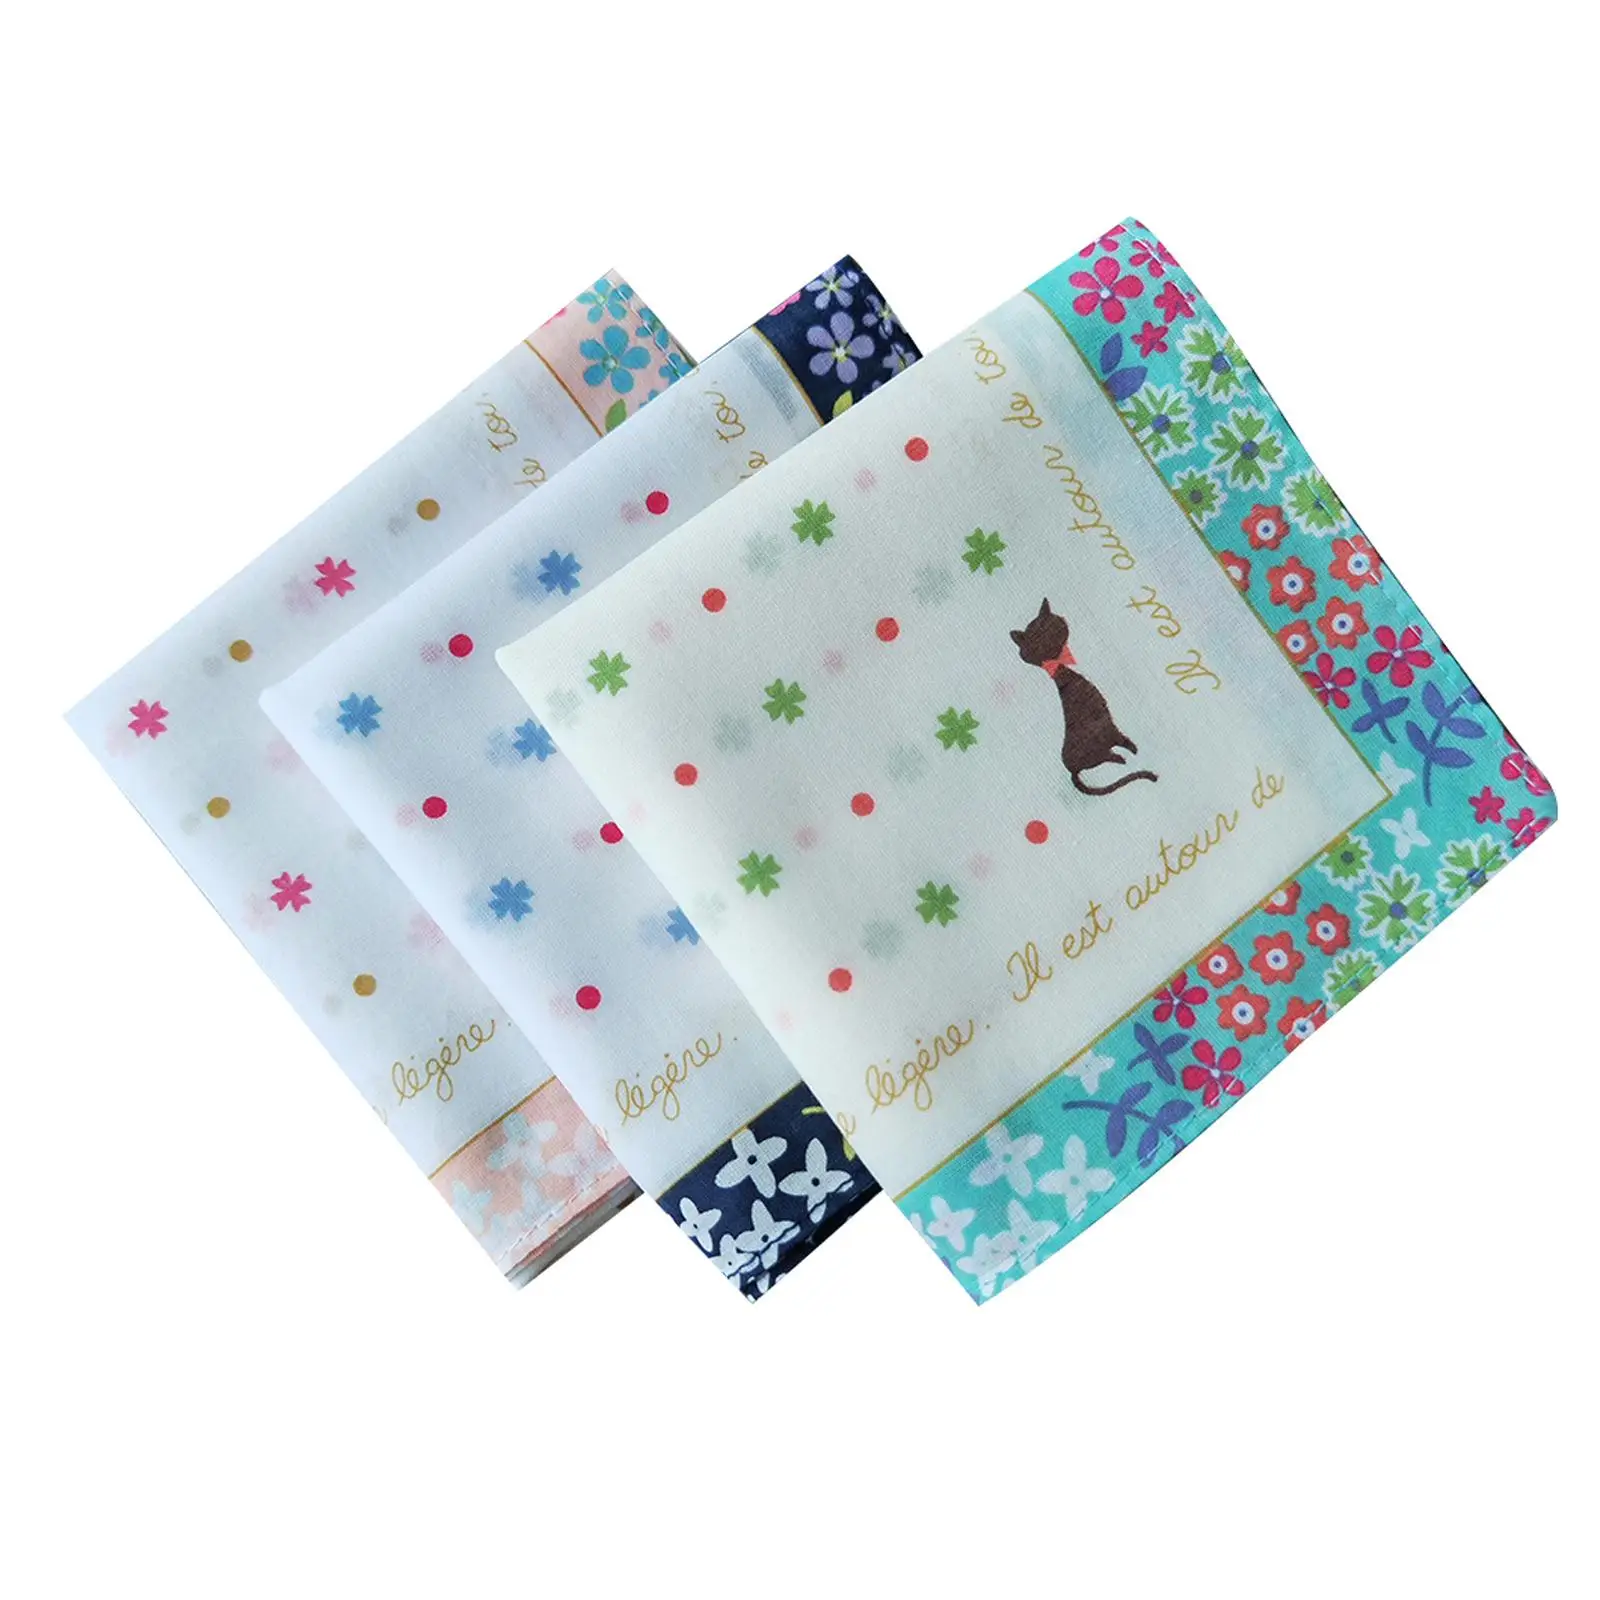 3x Women Cotton Handkerchiefs Square Pocket 34cm Floral Print Decorative for Events